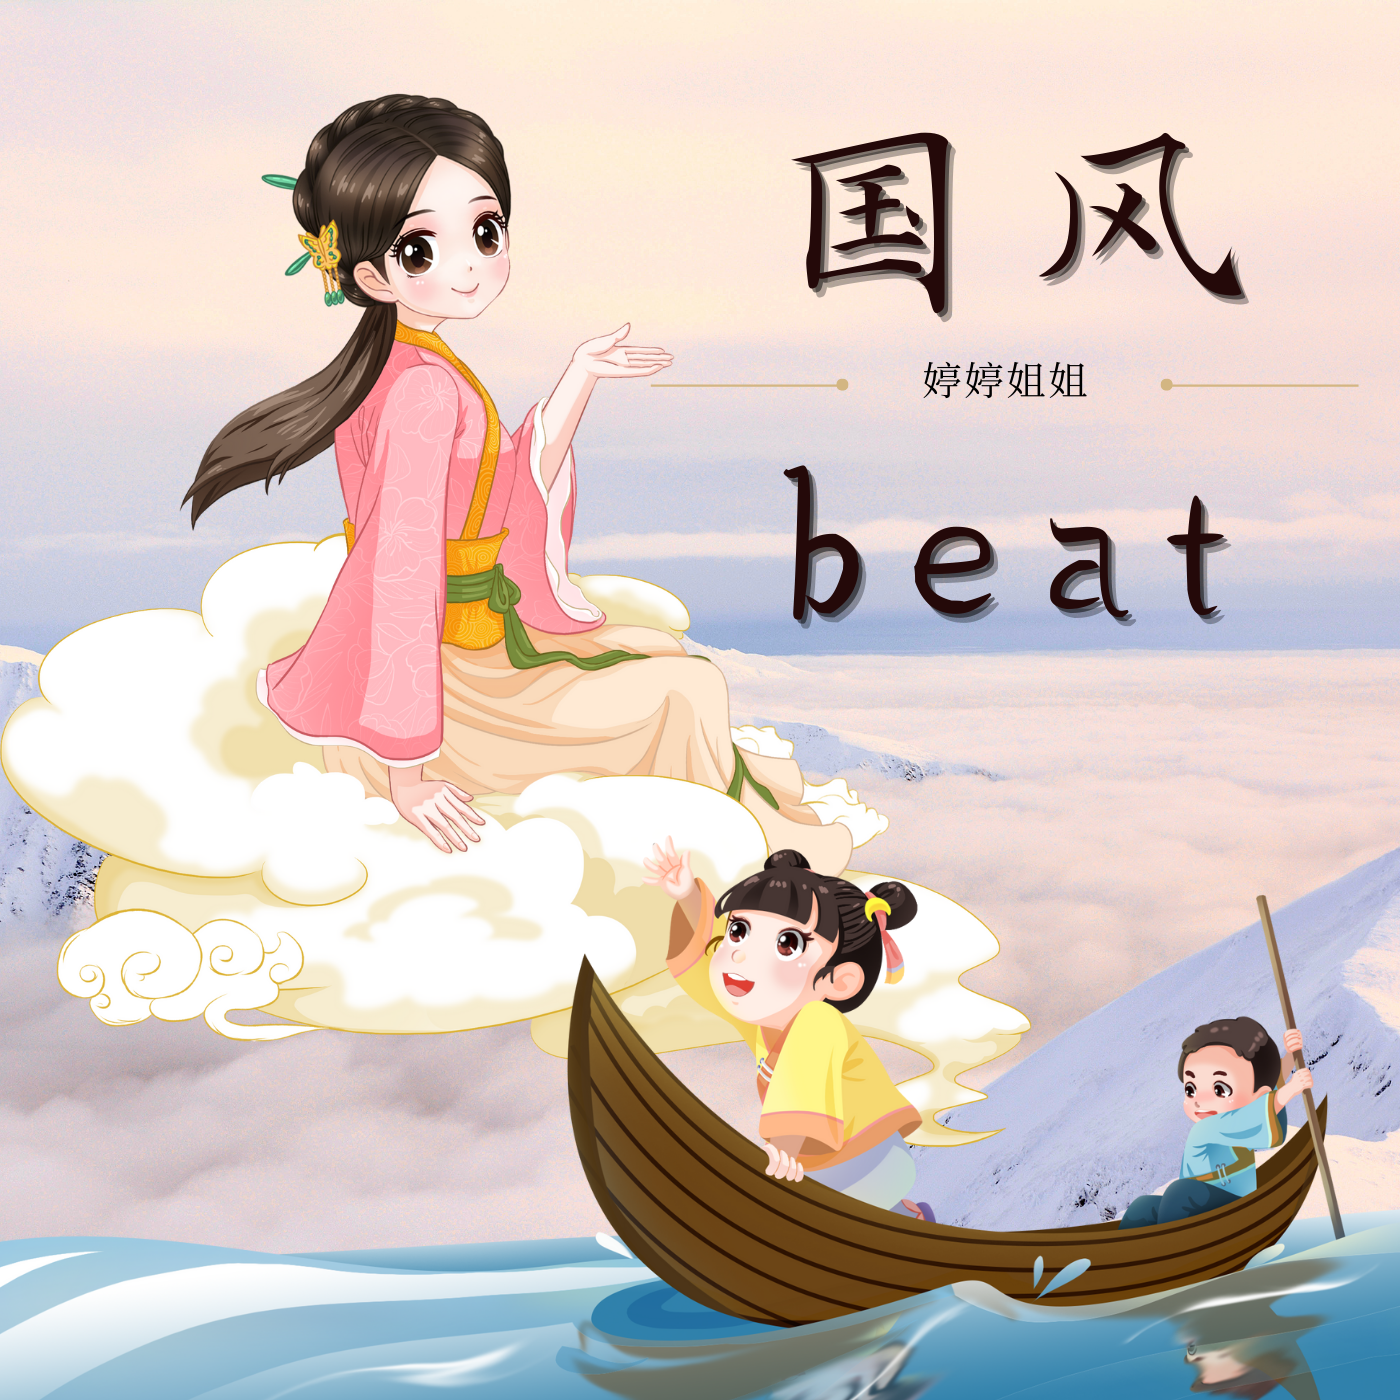 婷婷姐姐 - “相思”-中国风/Chinese type beat-BPM140